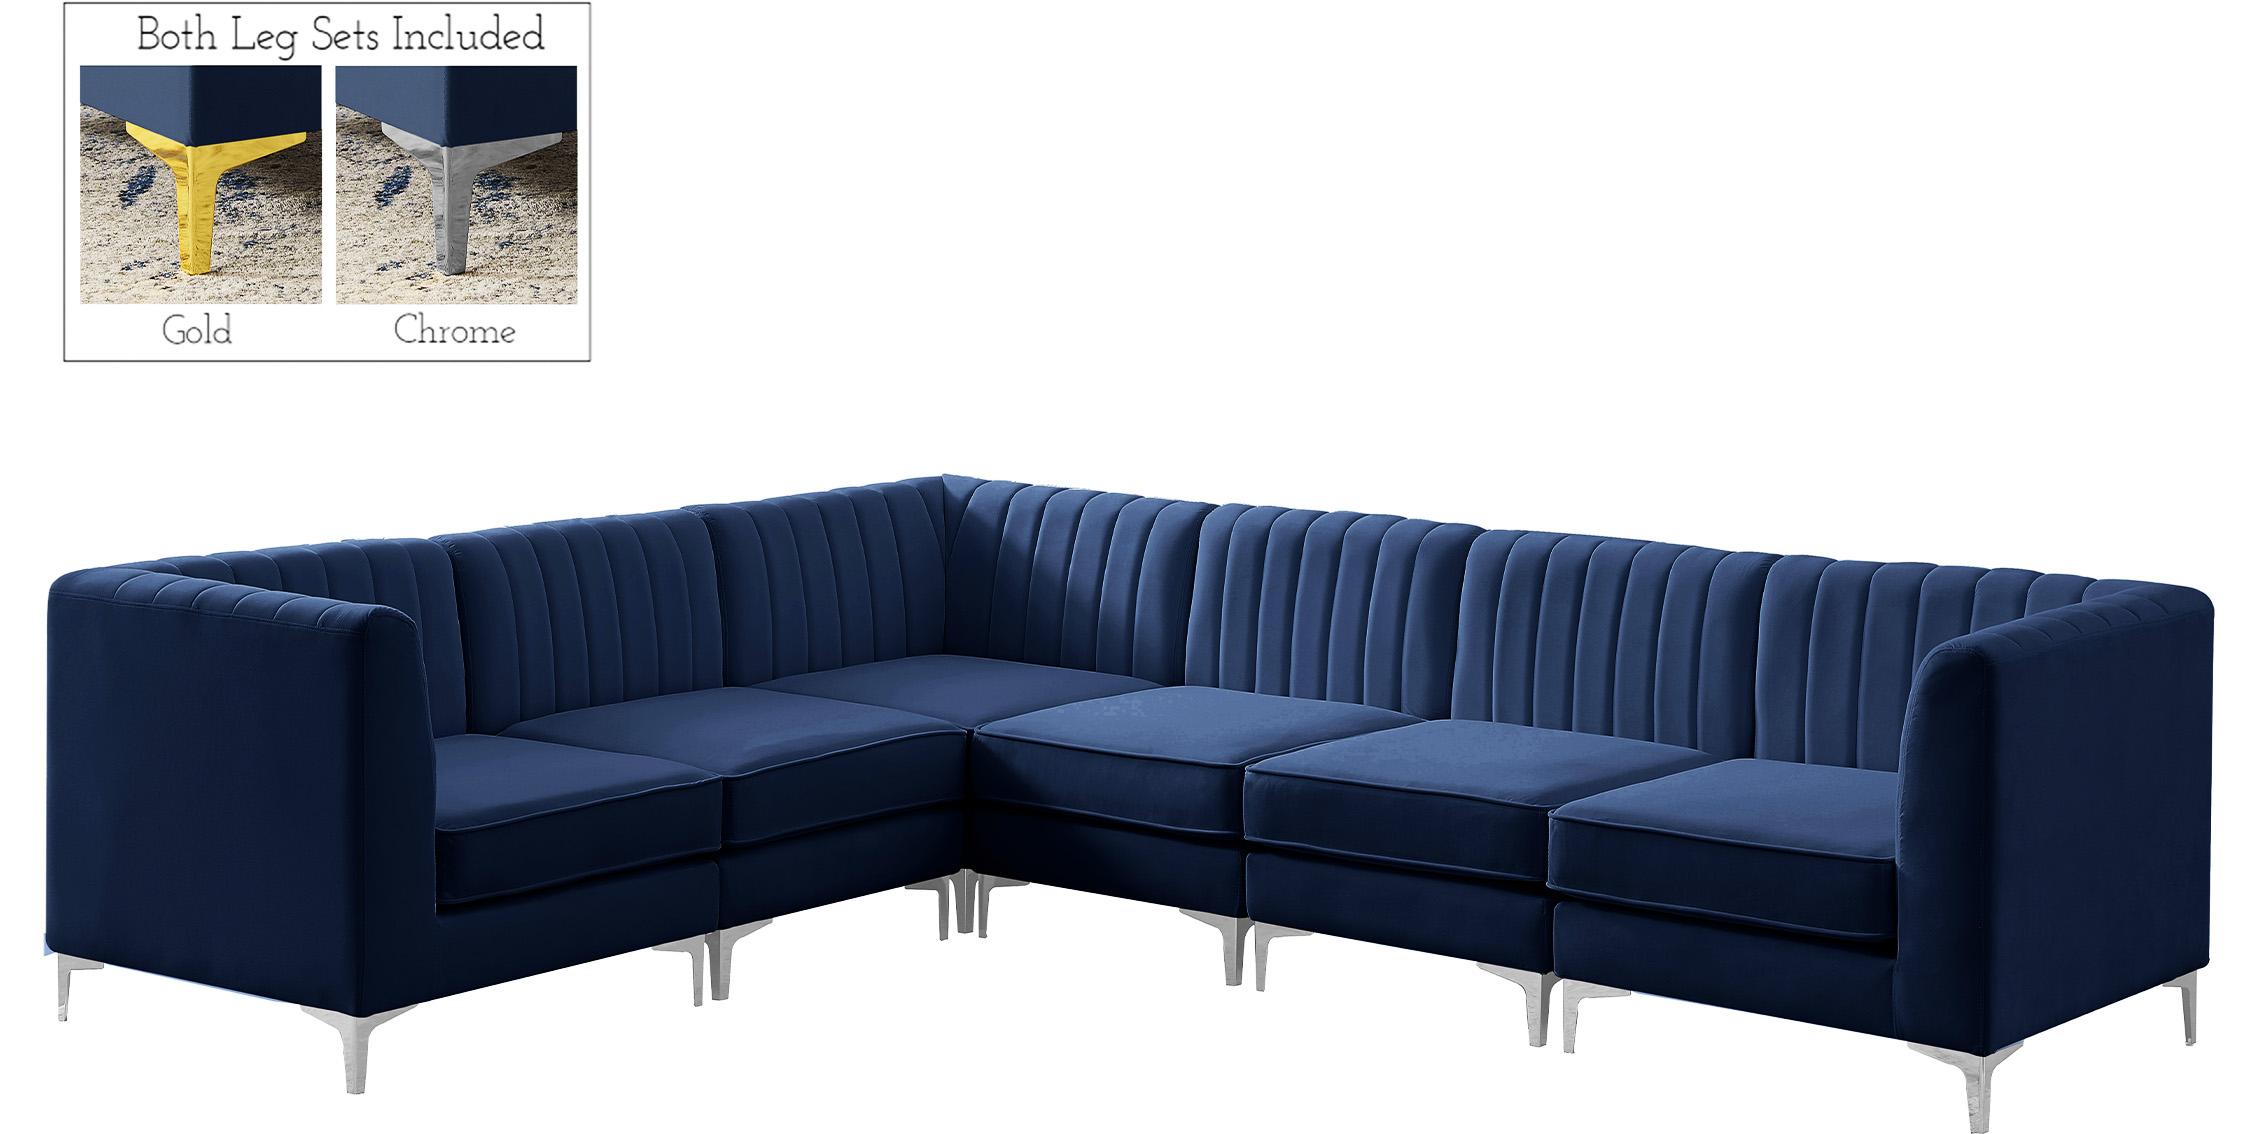 

    
Meridian Furniture ALINA 604Navy-Sec6A Modular Sectional Sofa Navy 604Navy-Sec6A
